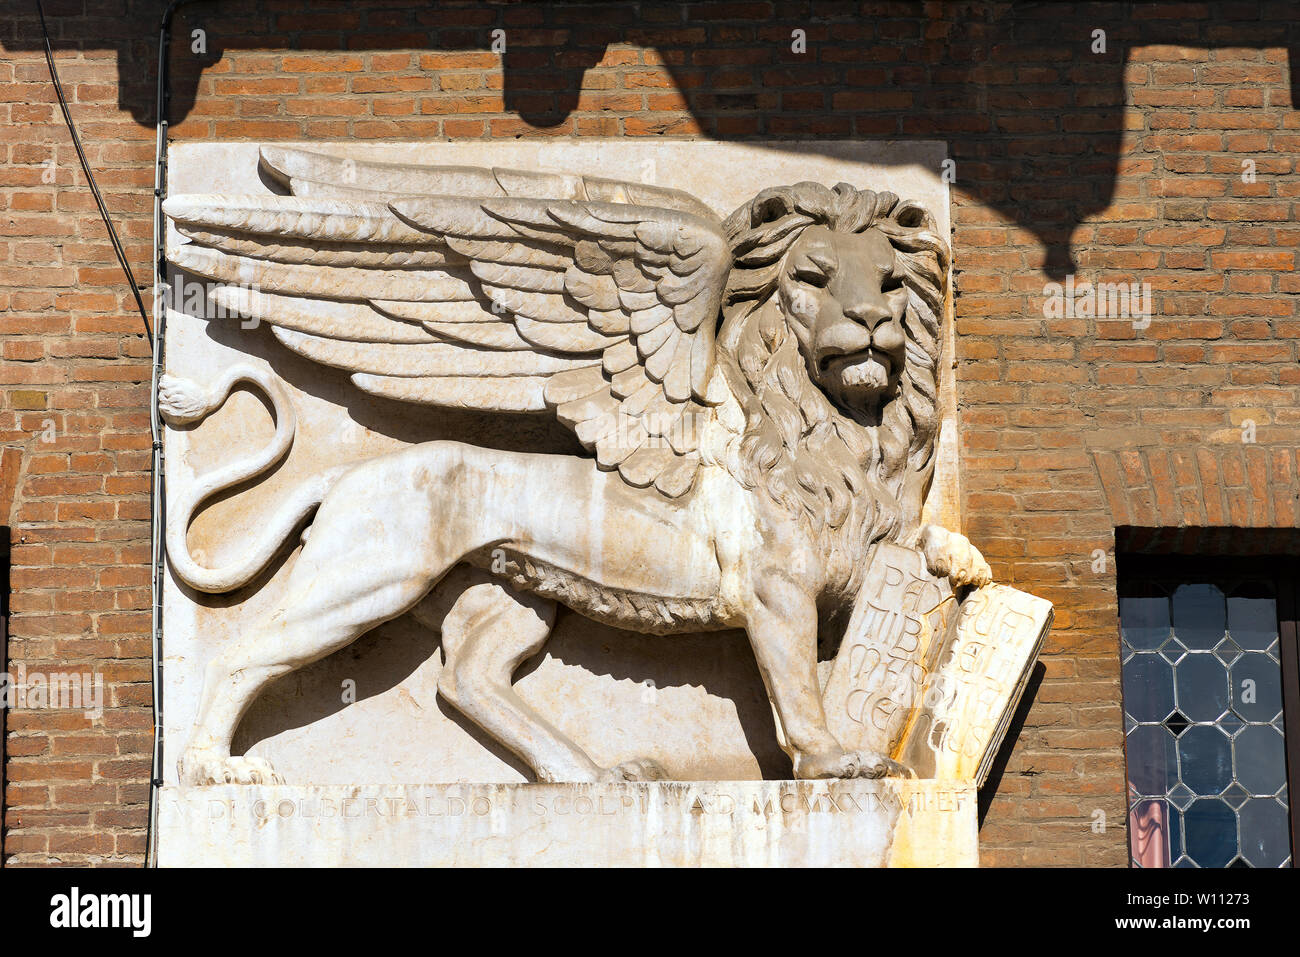 El león alado de San Marcos, símbolo de la República de Venecia, en la Piazza dei Signori, Verona (Patrimonio de la humanidad de la UNESCO), Veneto, Italia Foto de stock